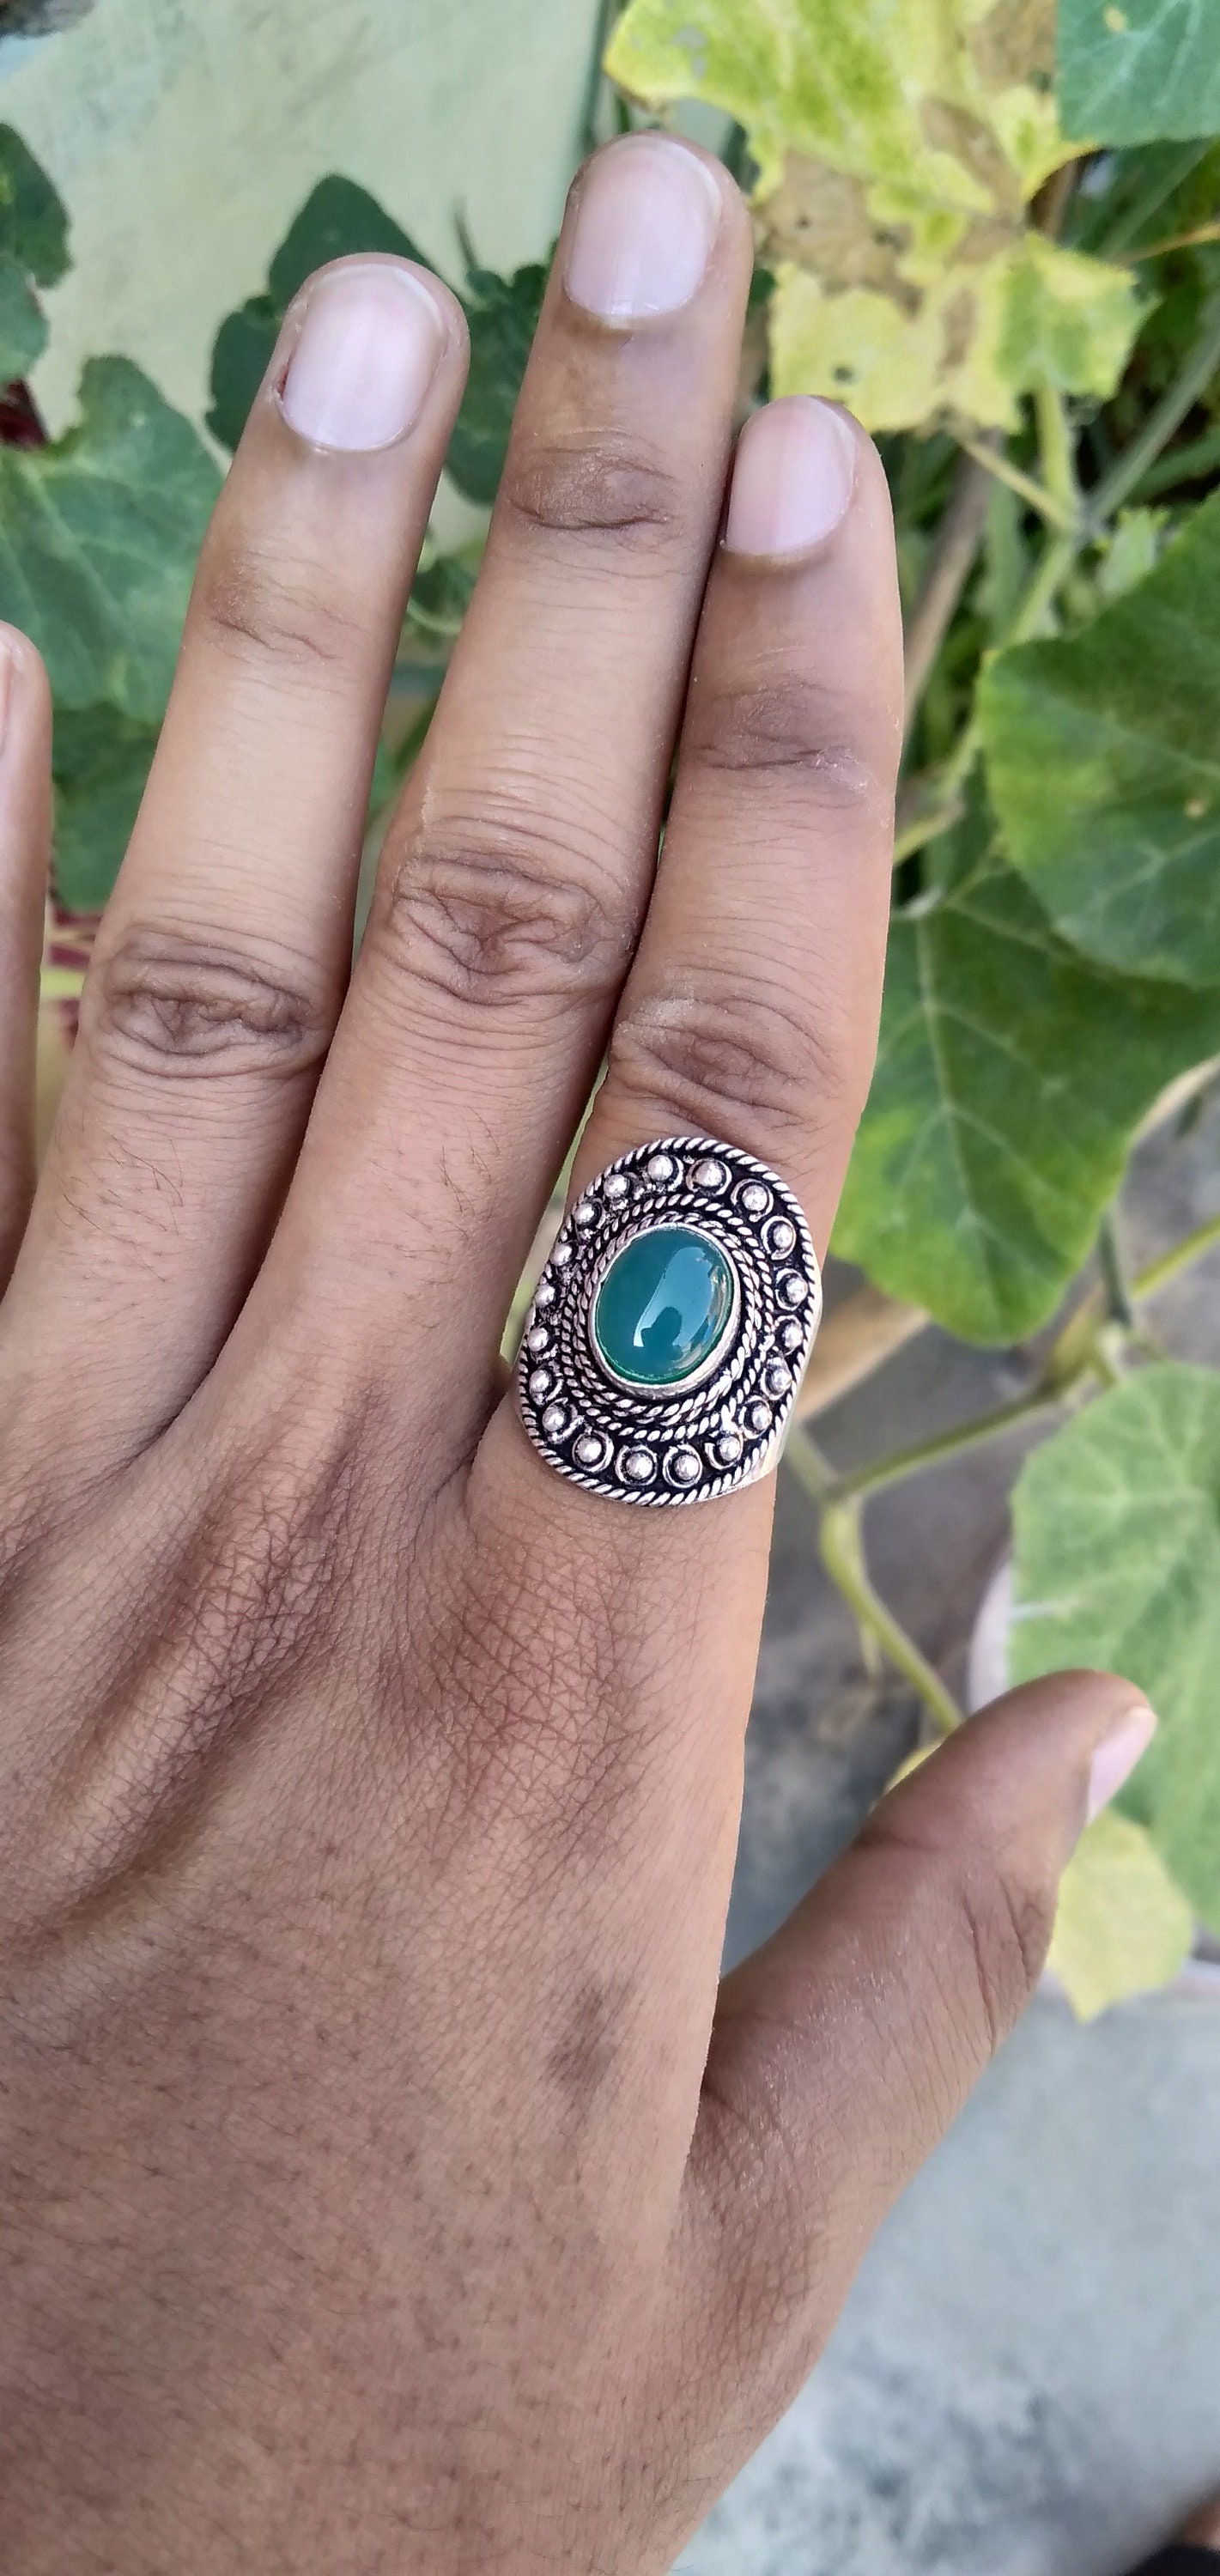 Queen silber Ring   Sparkly Ringe für Frauen  Vintage Silber Ring   Sterling Silber Ring  